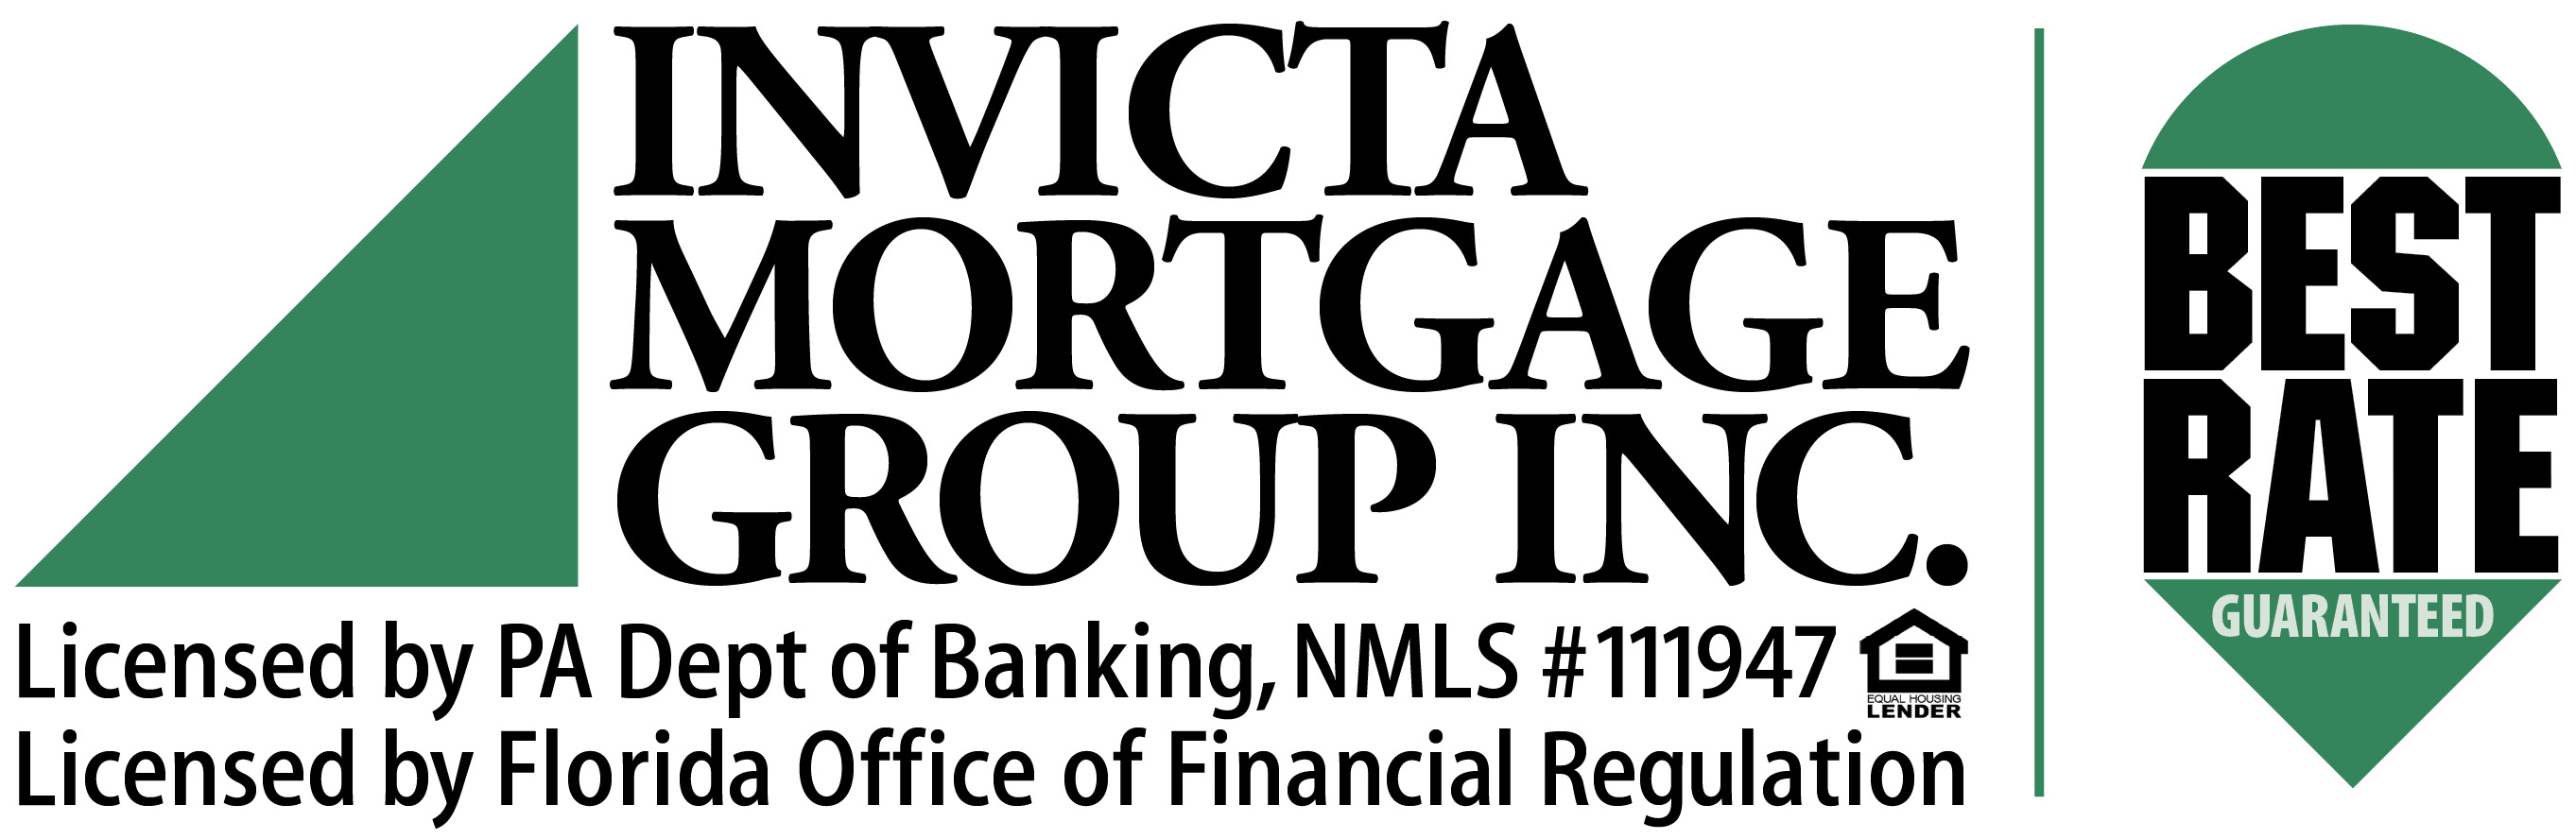 Invicta Mortgage Group